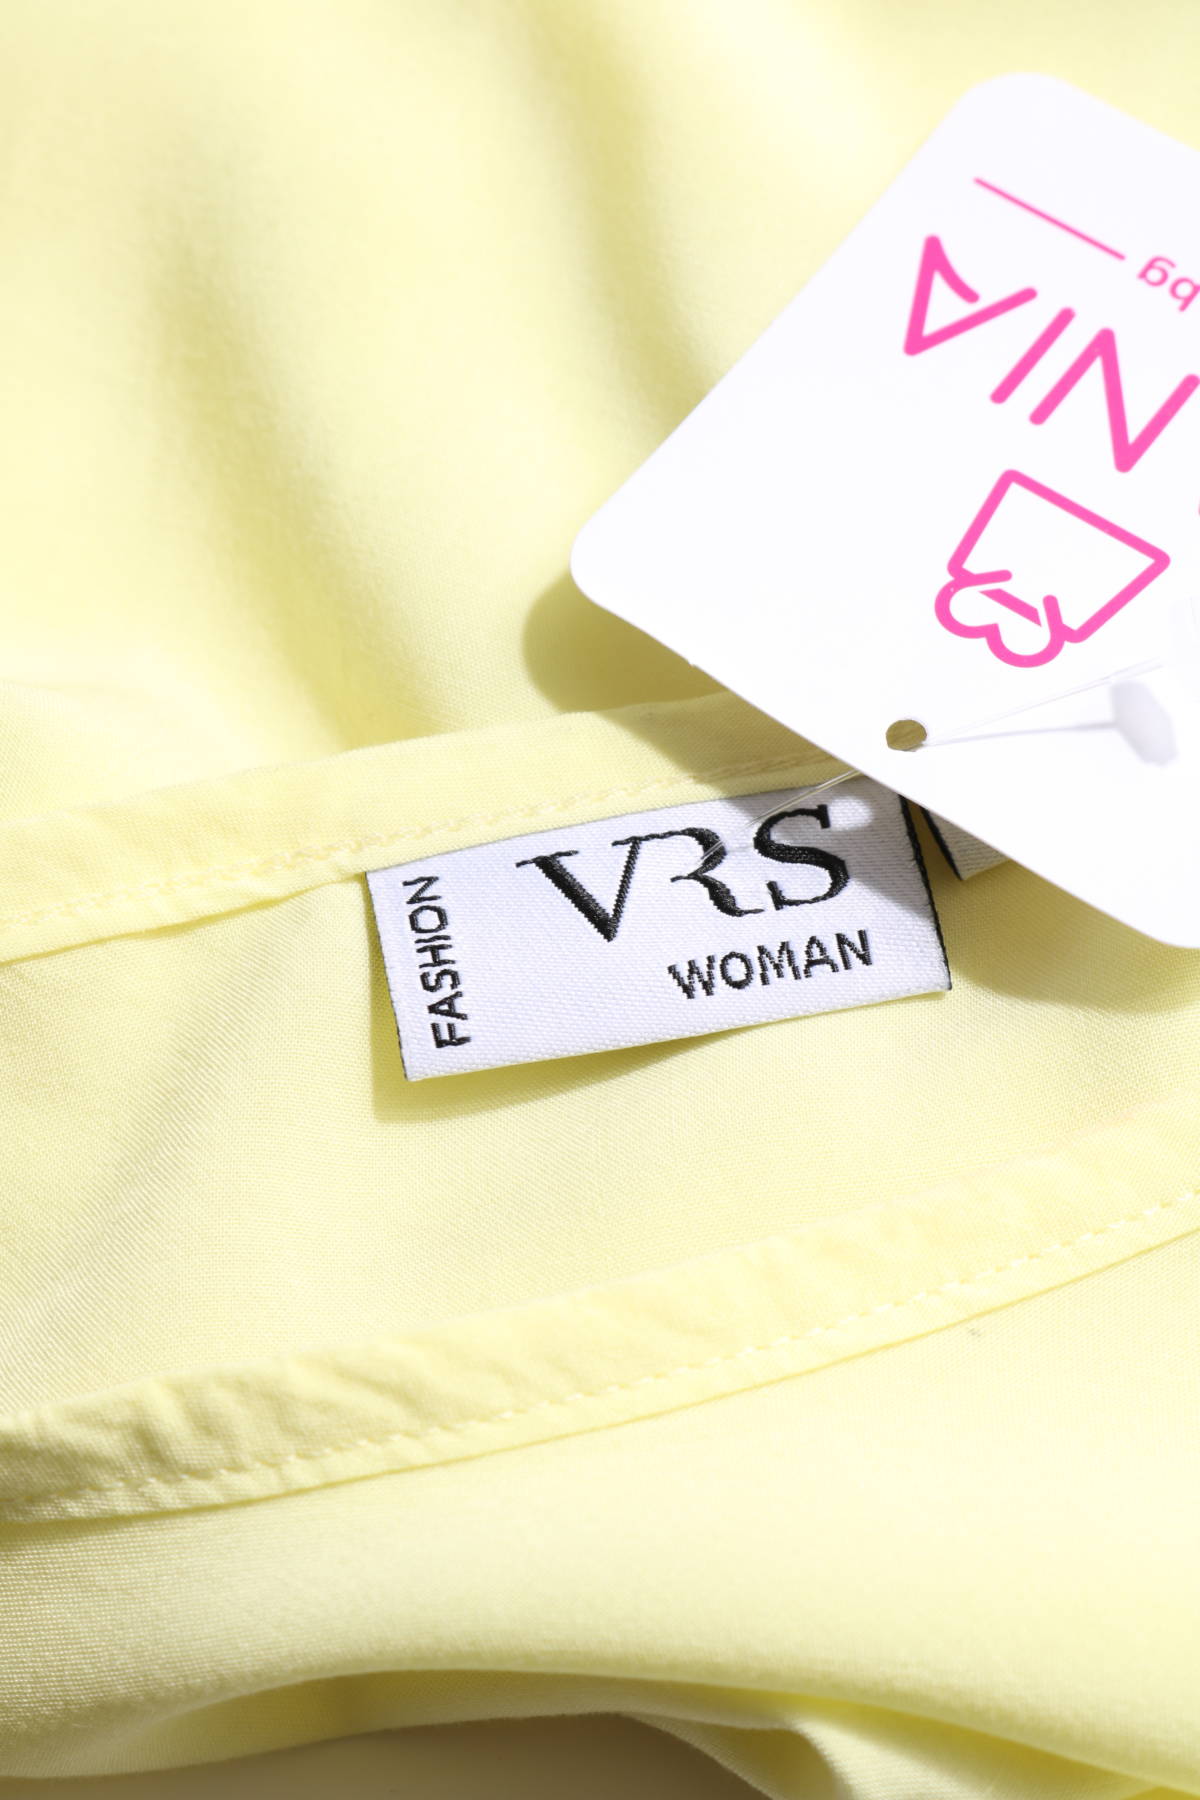 Блуза VRS3